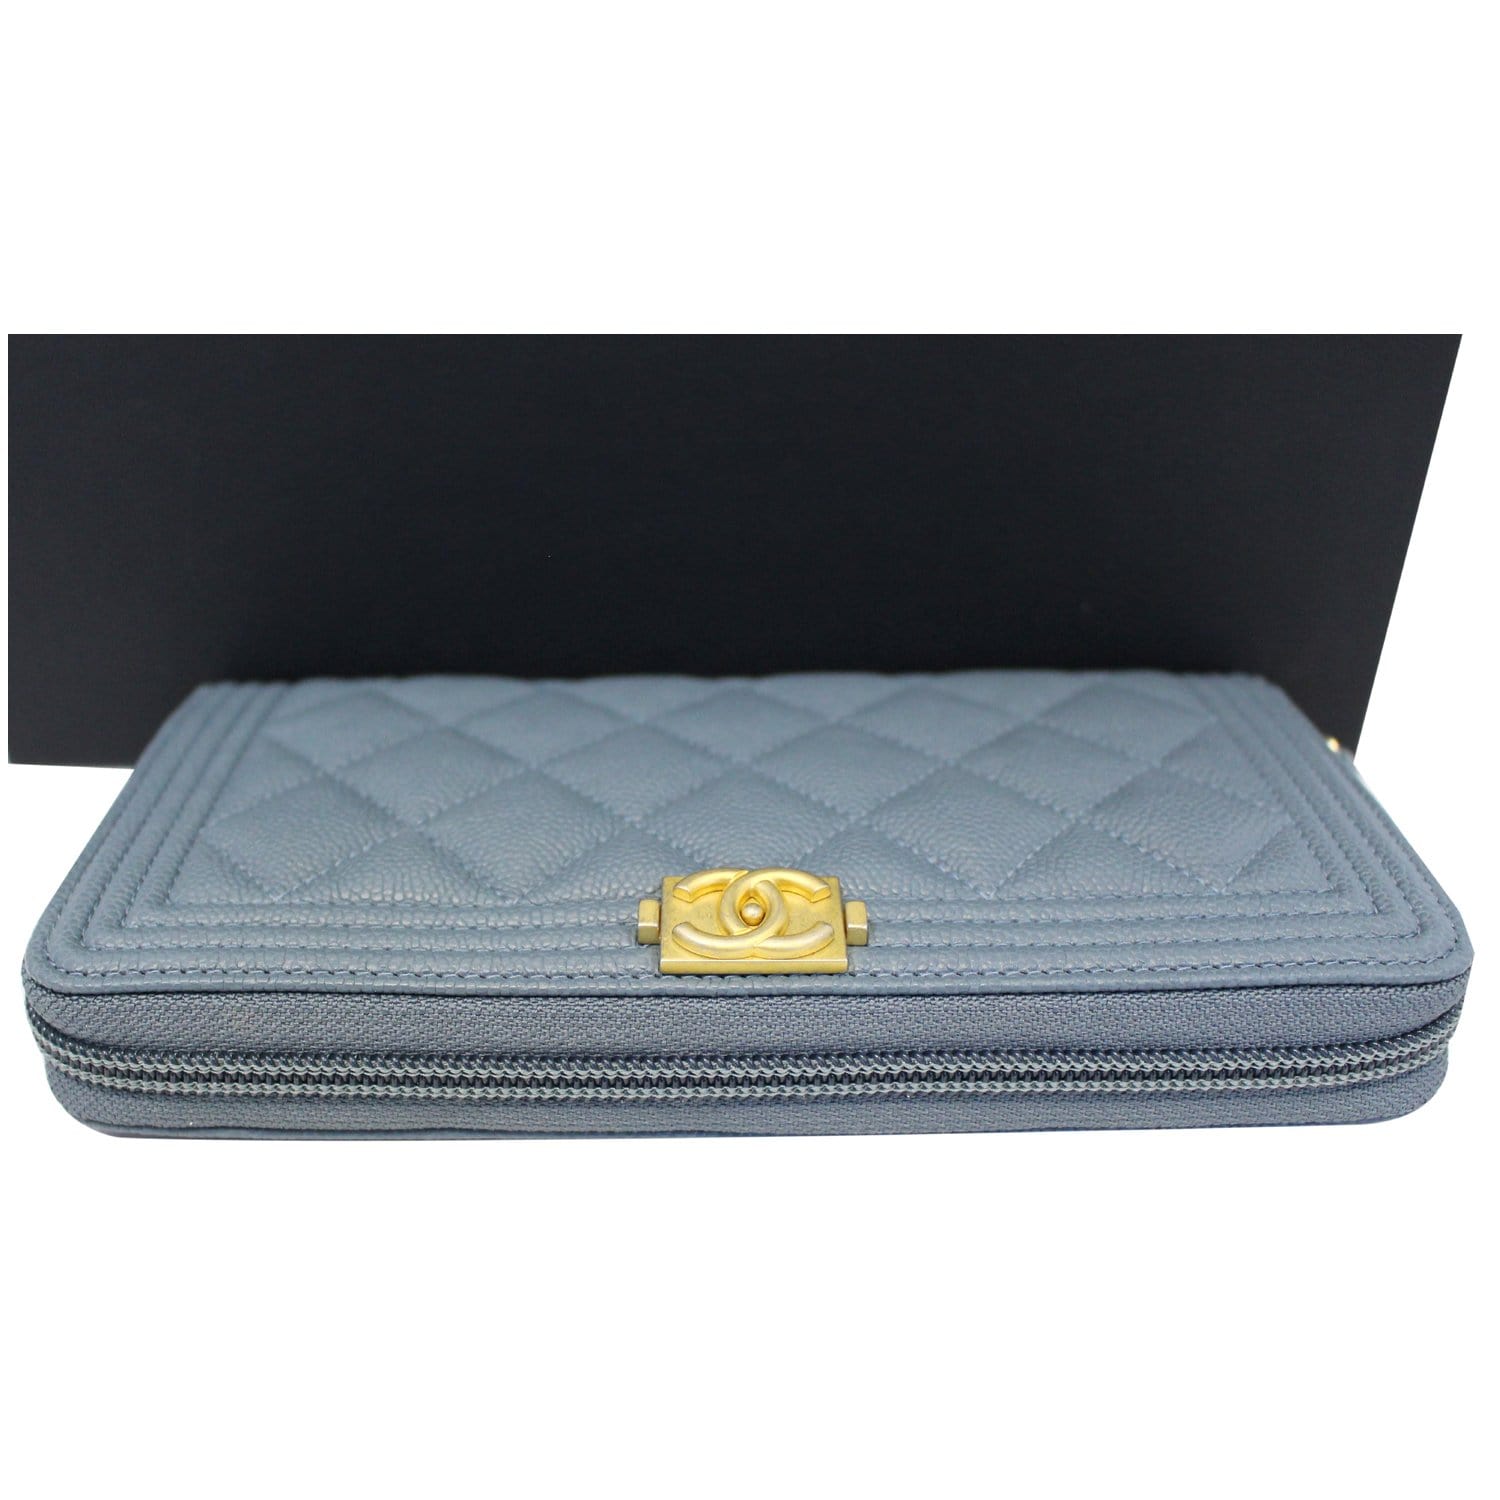 CHANEL, Bags, Chanel Handbag 2062008 Caviar Leather 1664004